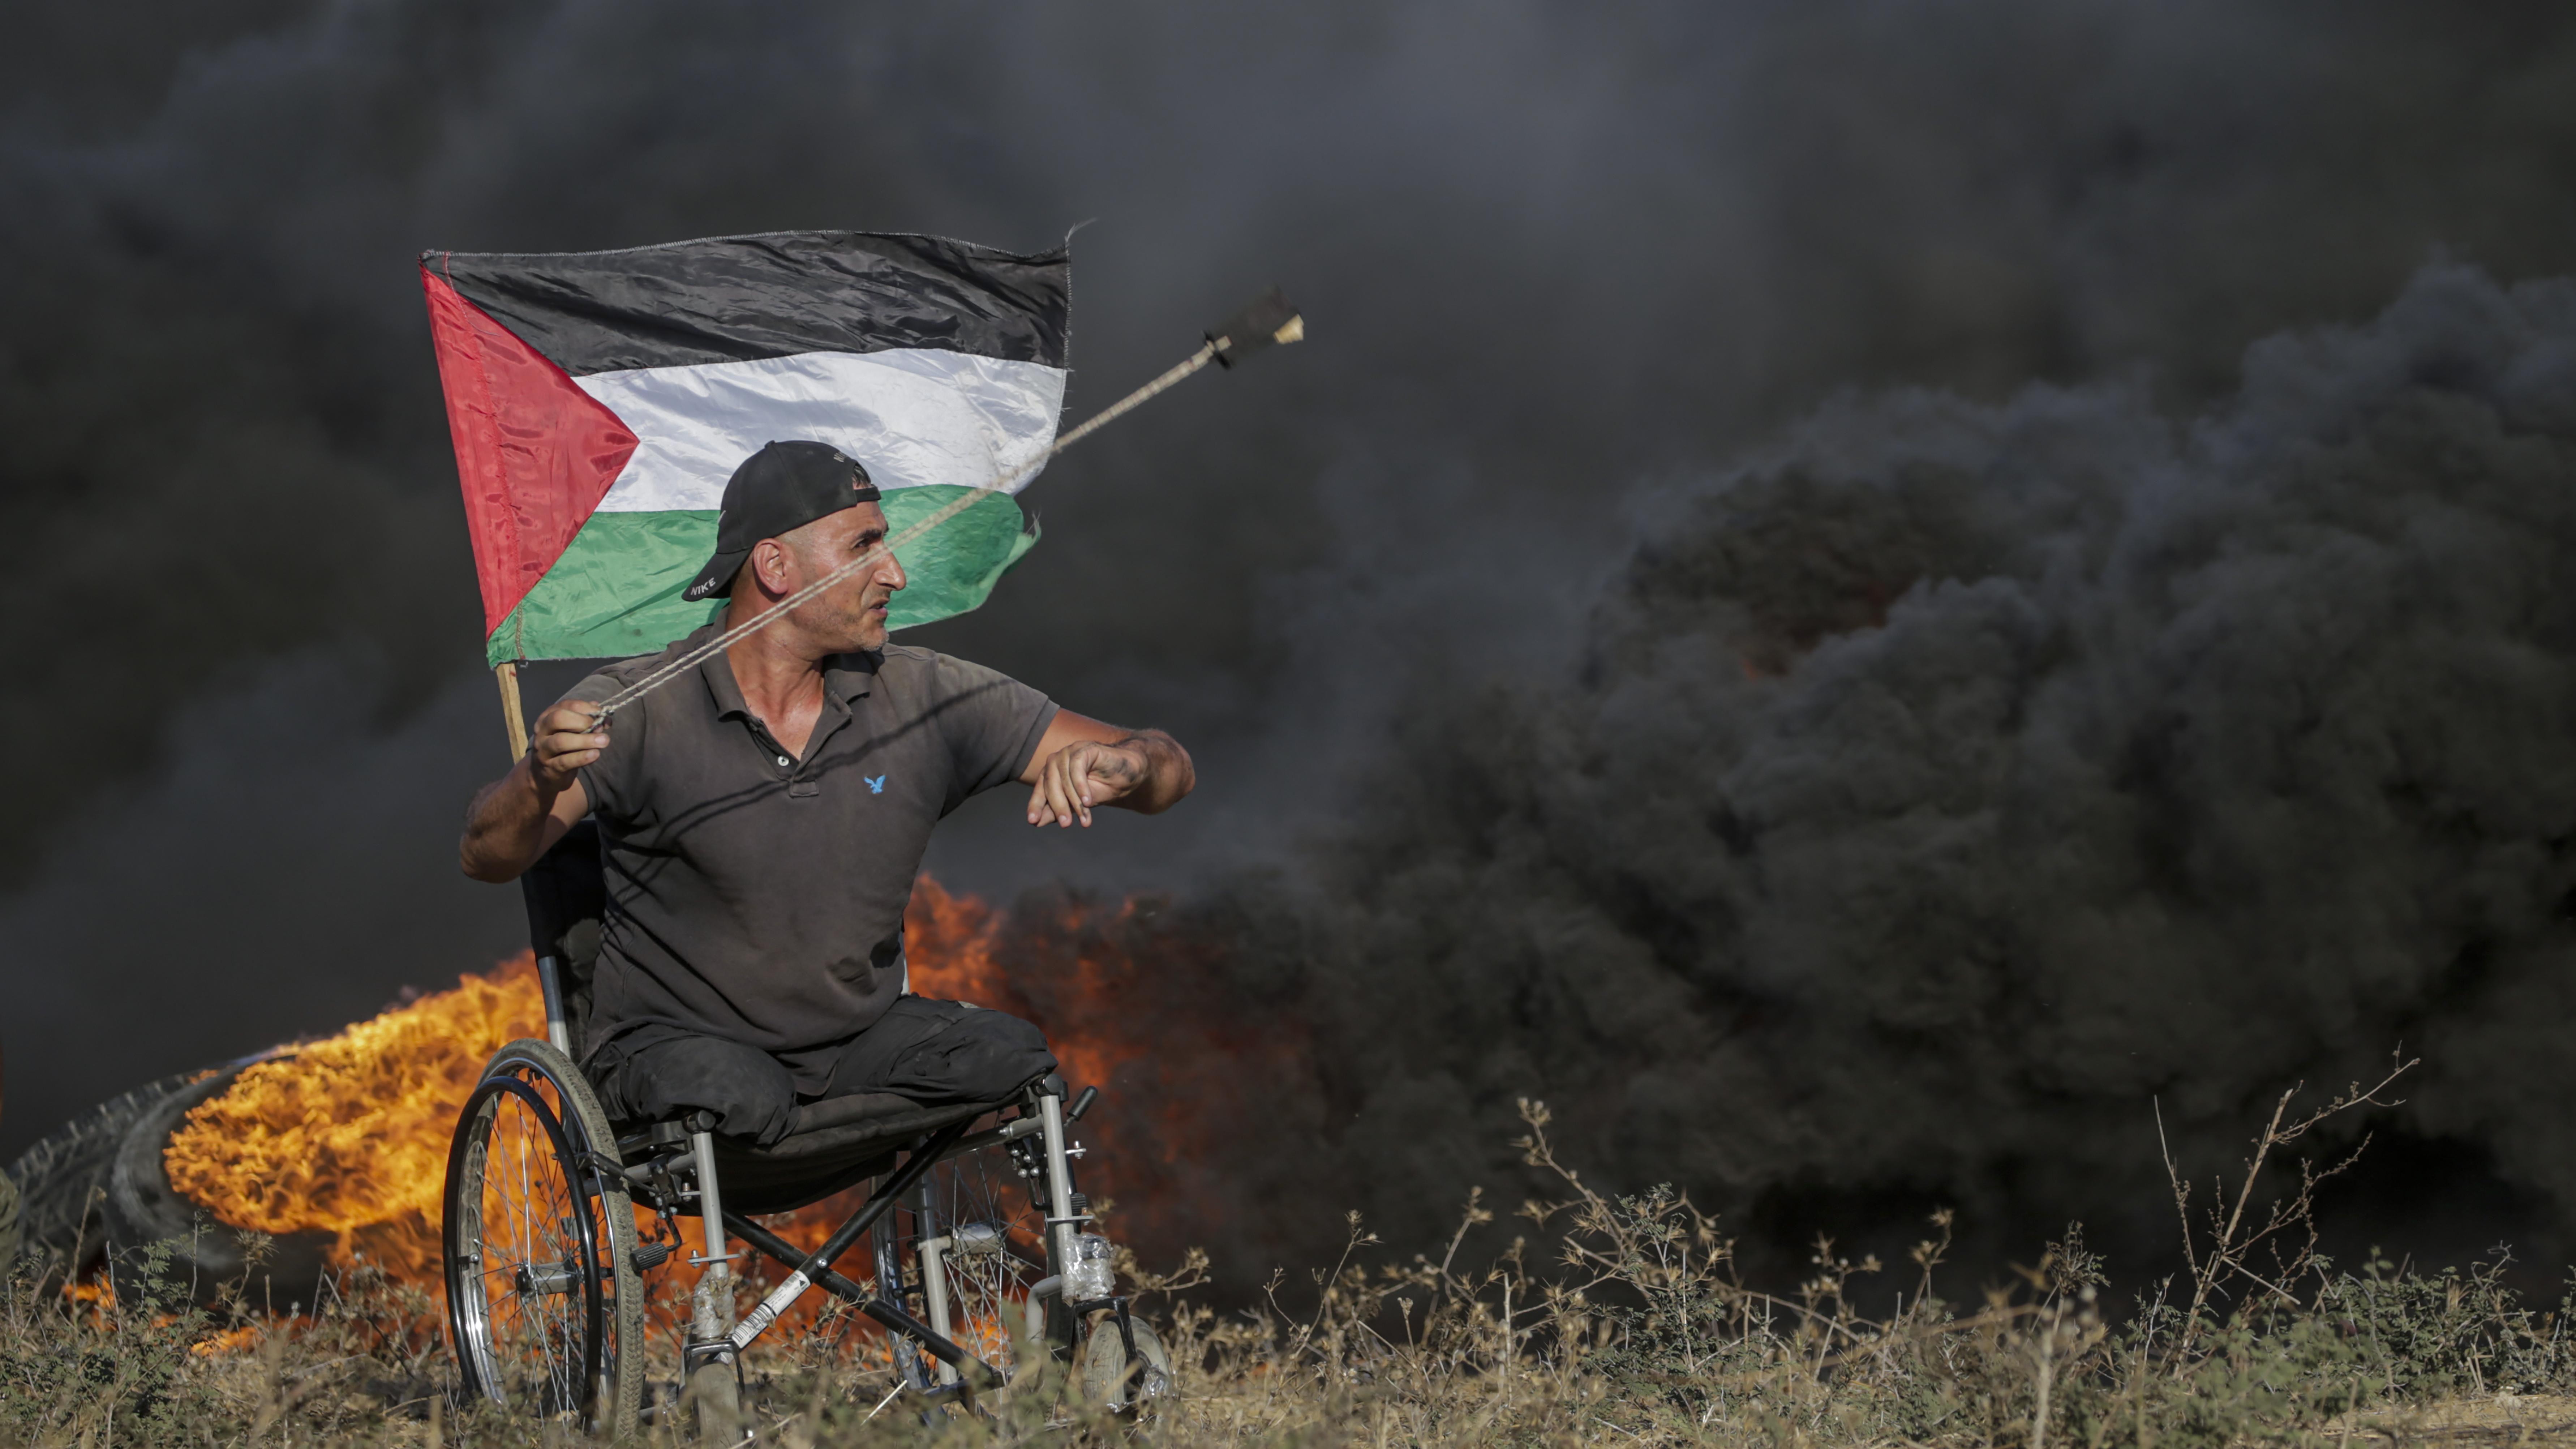 متظاهر فلسطيني مبتور الأطراف على كرسي متحرك يلقي الحجارة على القوات الإسرائيلية خلال اشتباكات على الحدود الشرقية لقطاع غزة.